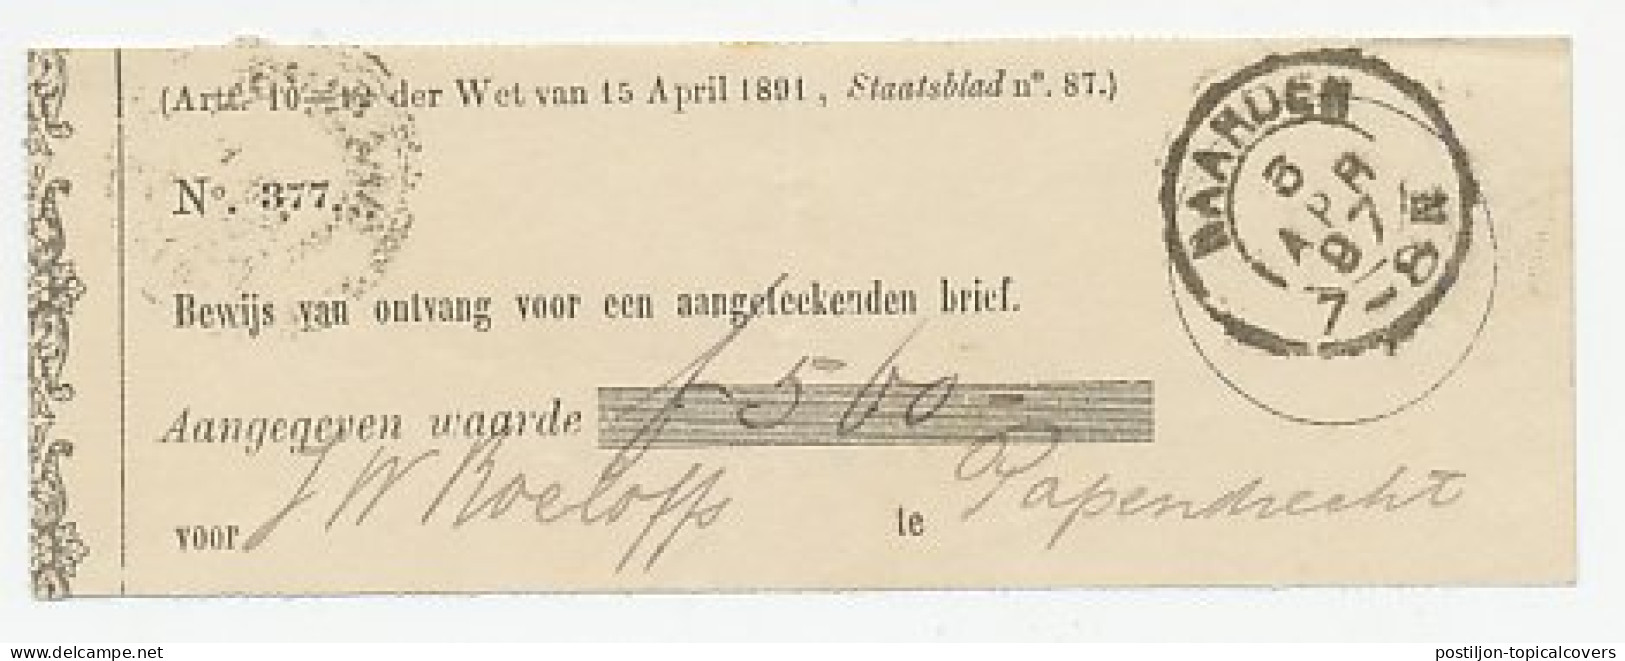 Naarden 1897 - Ontvangbewijs Aangetekende Zending - Unclassified